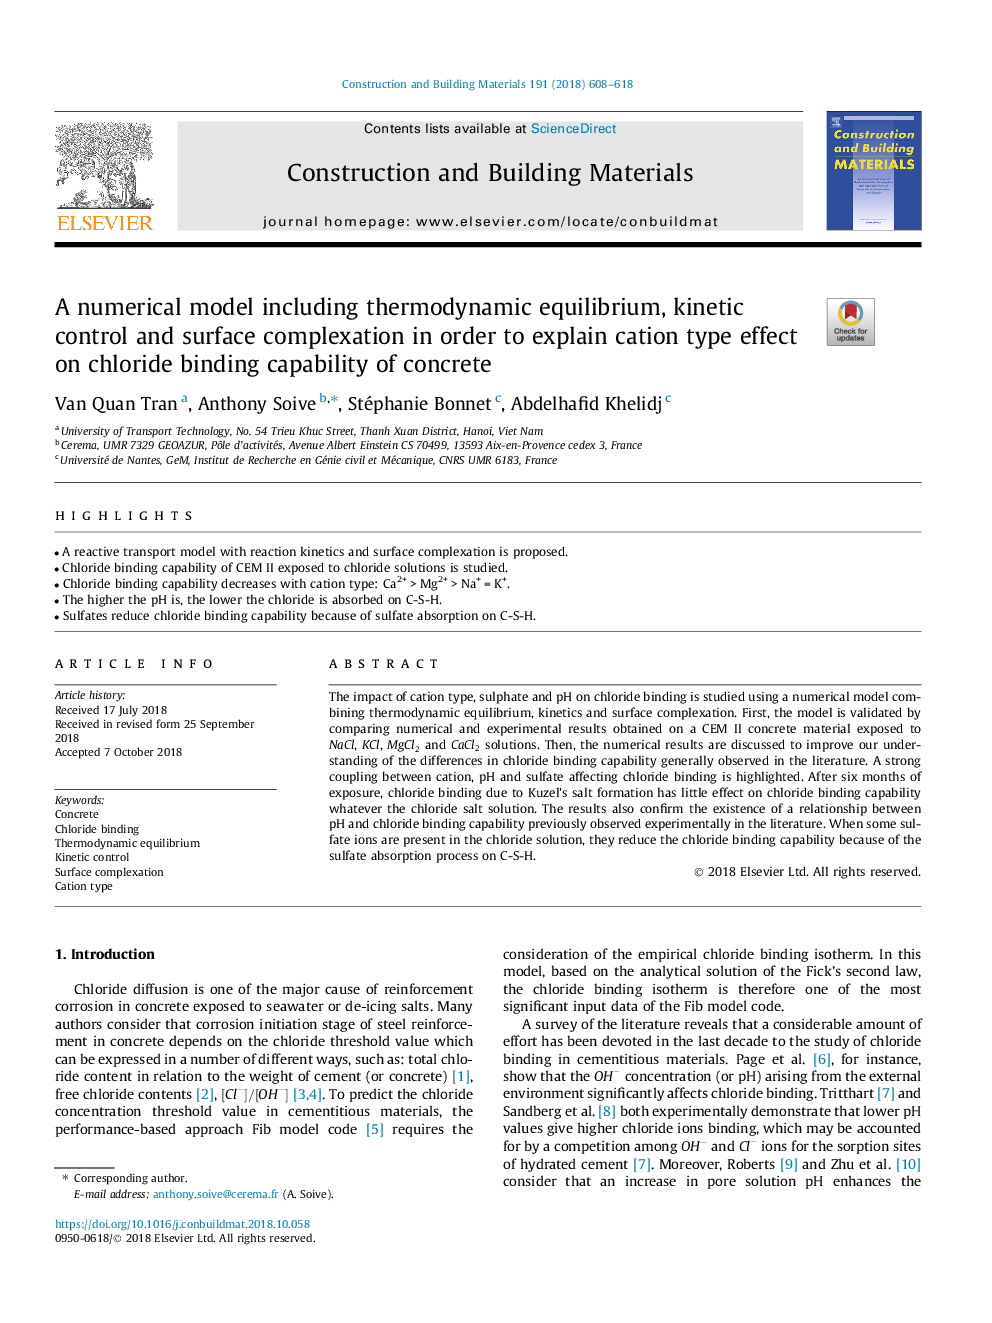 یک مدل عددی از جمله تعادل ترمودینامیکی، کنترل جنبشی و کمپلکس سطح به منظور توضیح اثر نوع کاتیون در کلرید اتصال قابلیت بتن